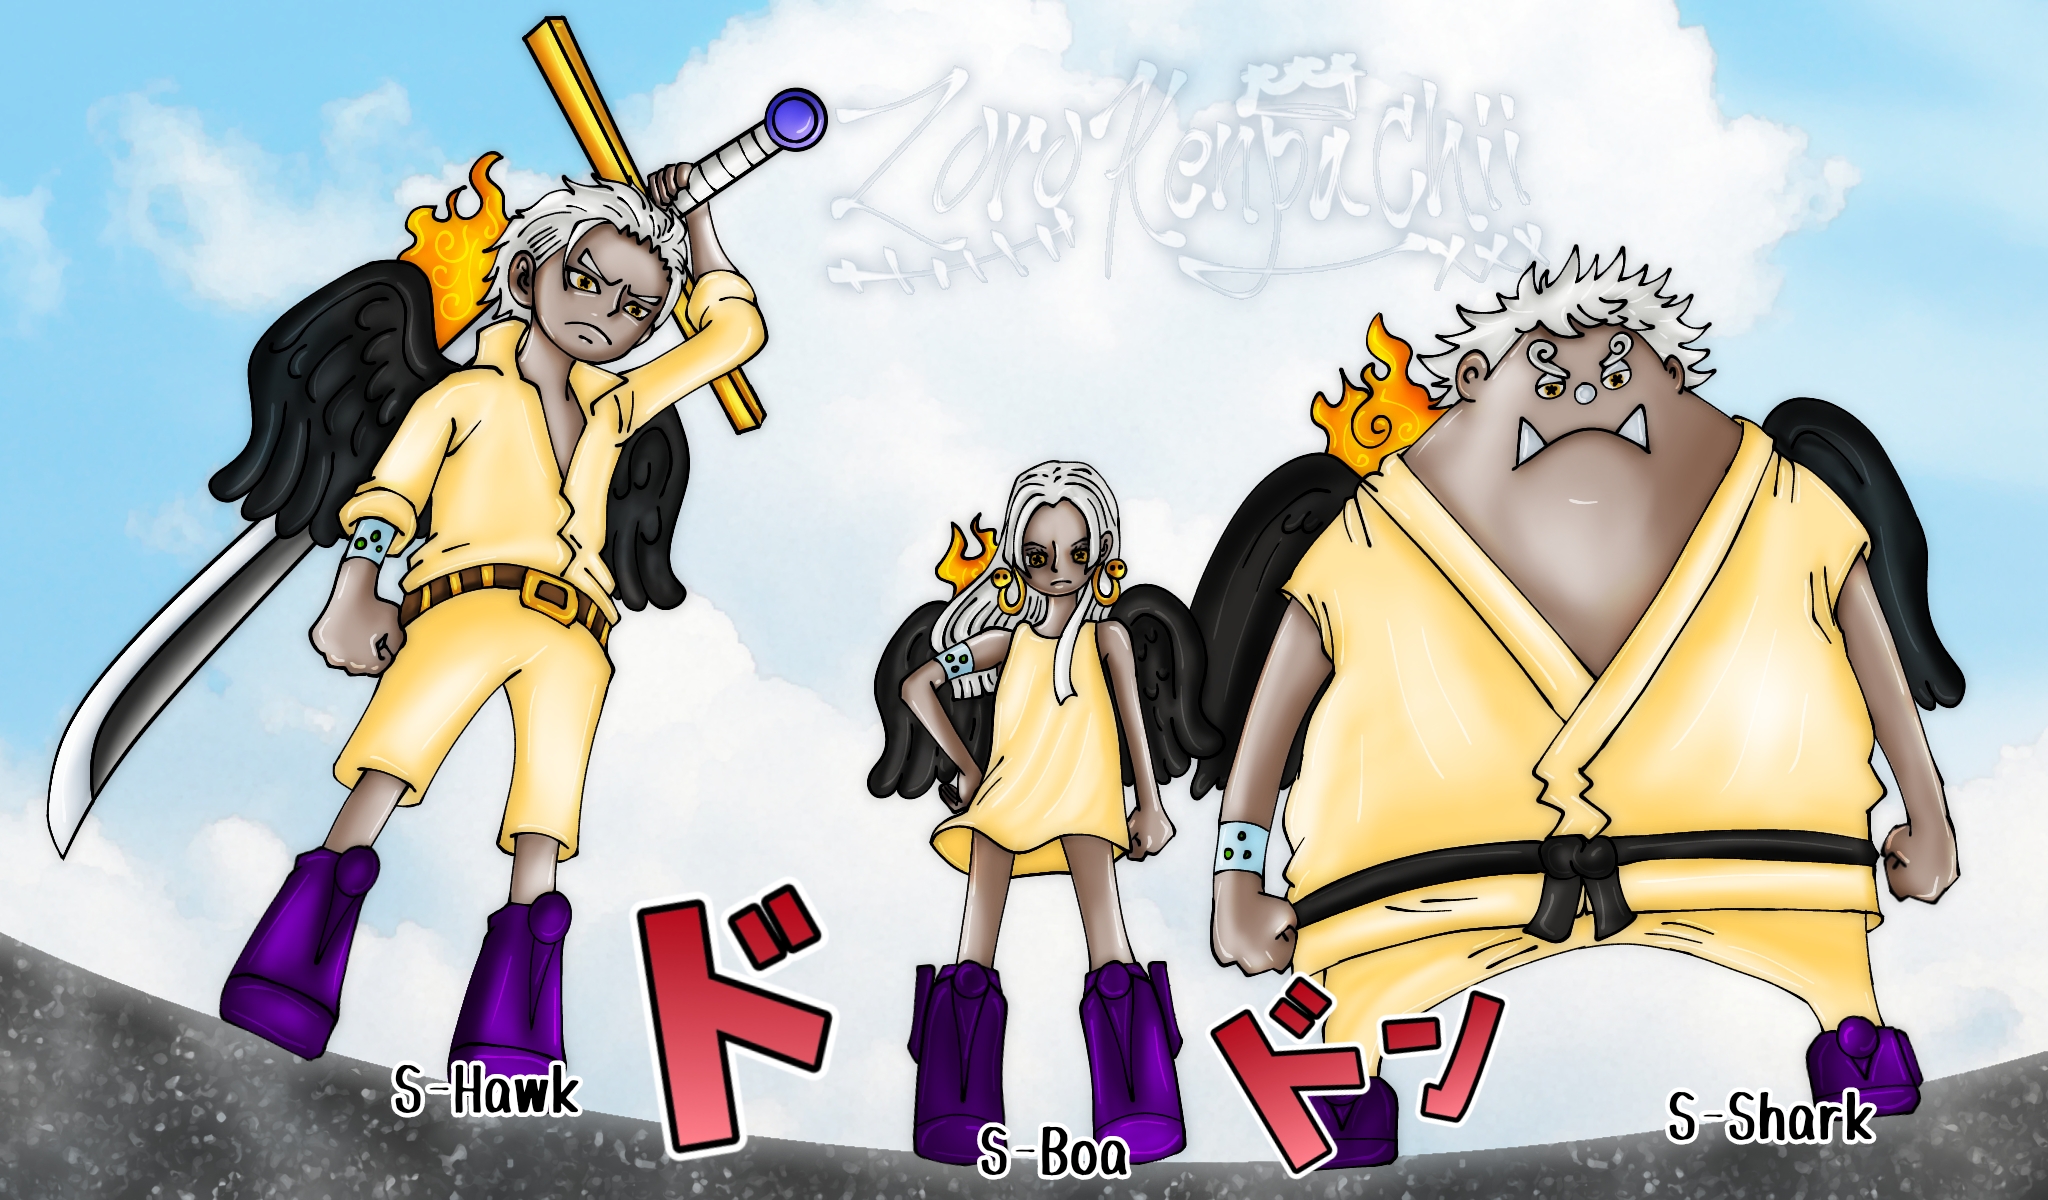 ONE PIECE Luffy GEAR 5 Nika God JoyBoy Manga by zorokenpachii on DeviantArt